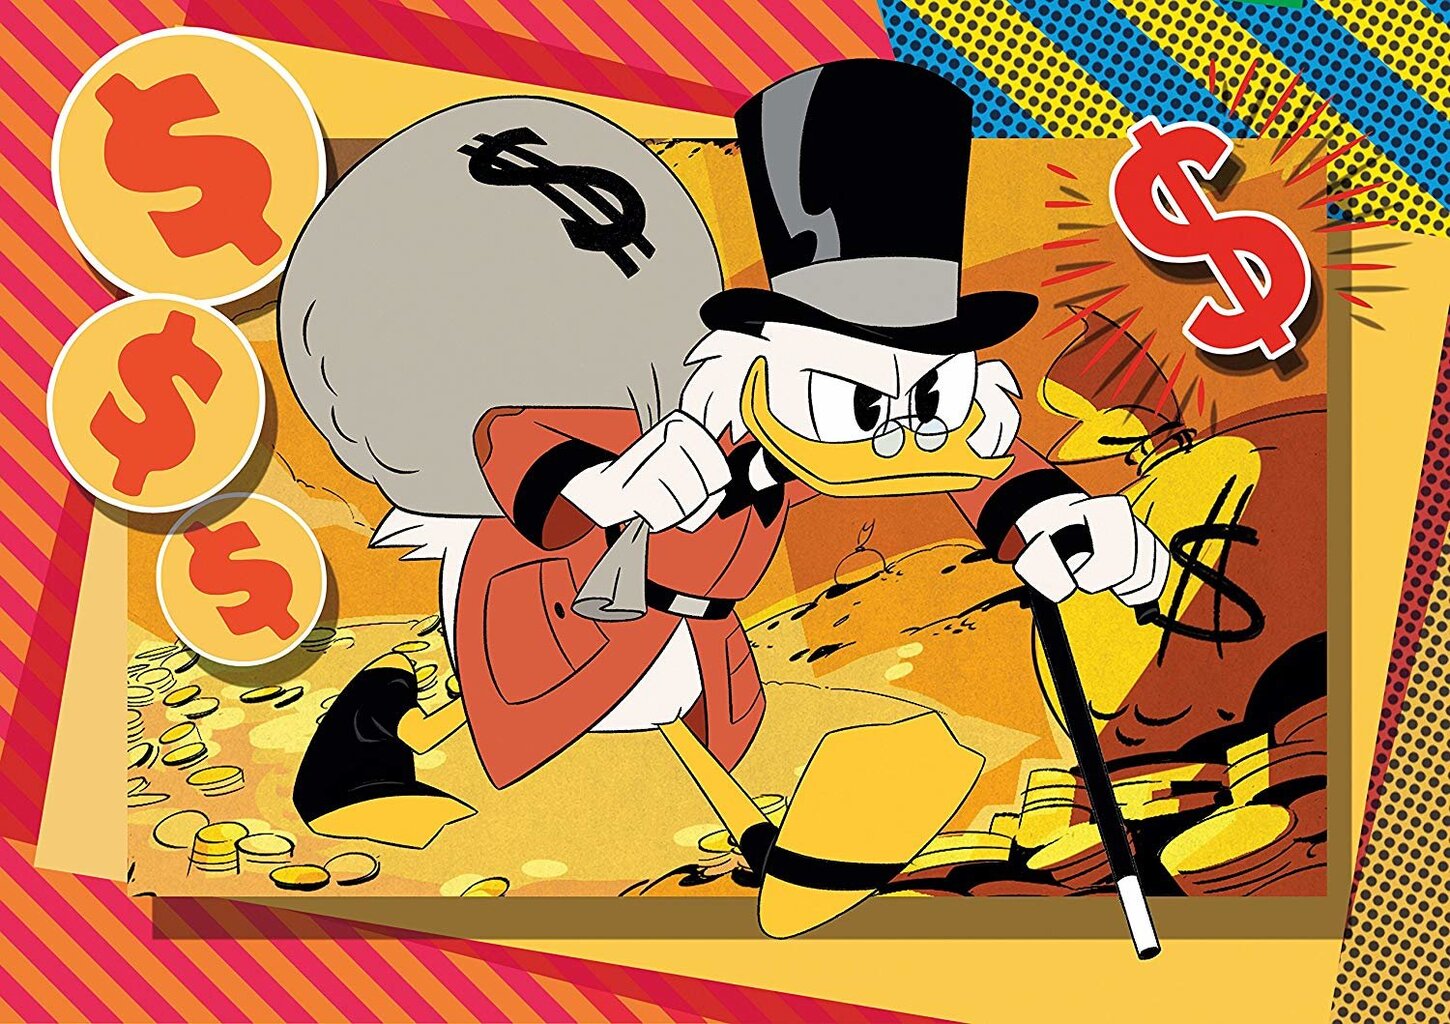 Dėlionių rinkinys Clementoni Ančiukų istorijos (Duck Tales) 3 x 48 d. kaina ir informacija | Dėlionės (puzzle) | pigu.lt